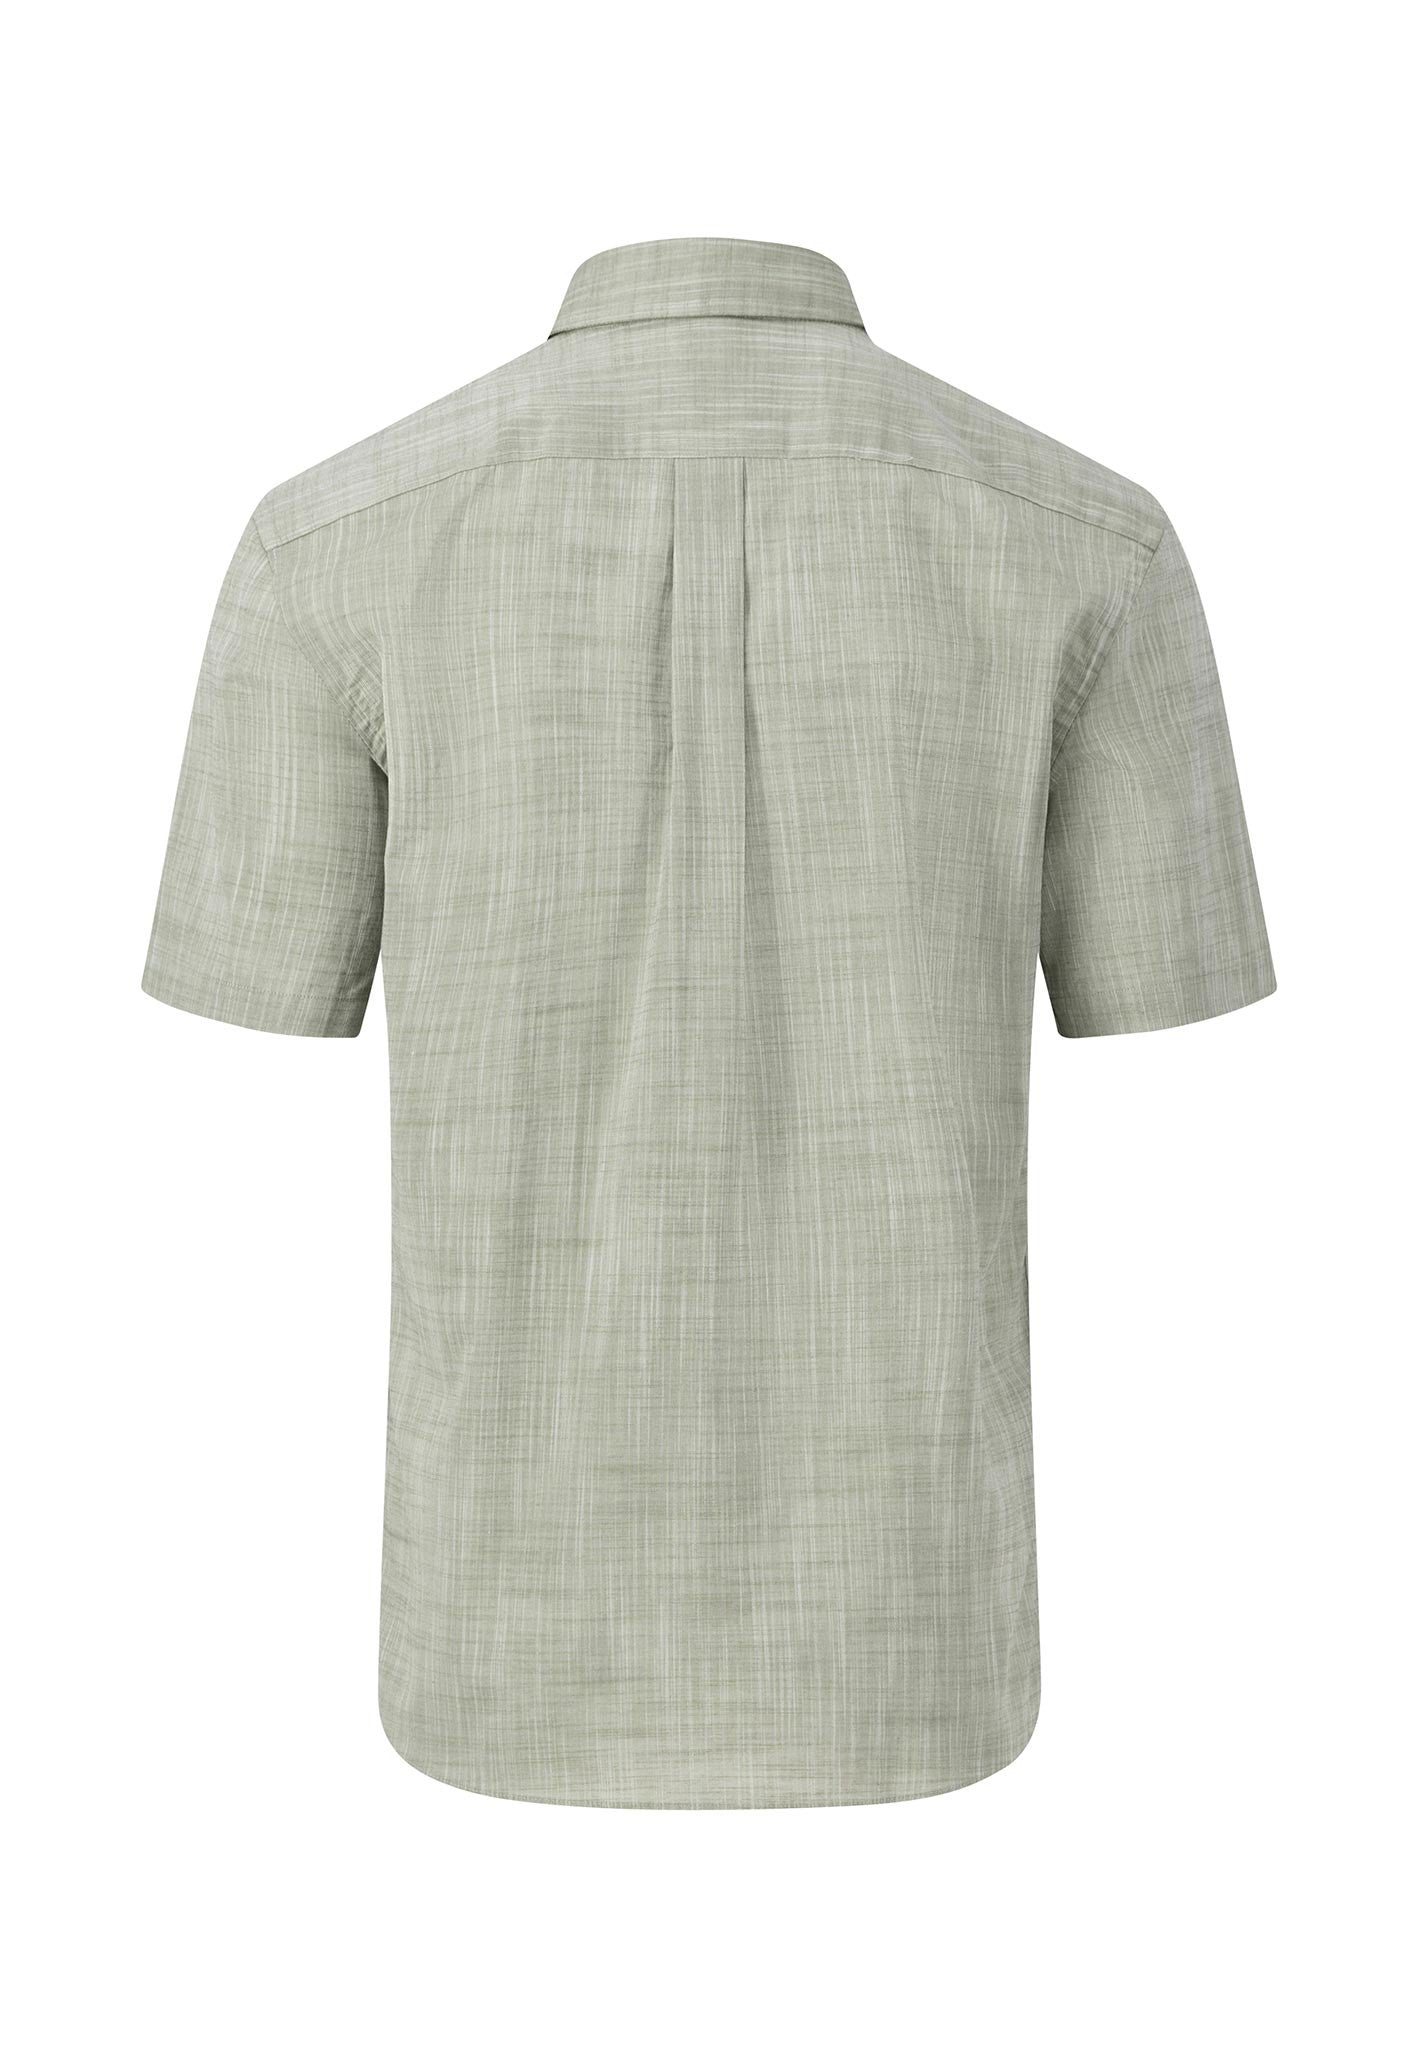 Fynch Hatton Superfine Cotton Short Sleeve Shirt Olive